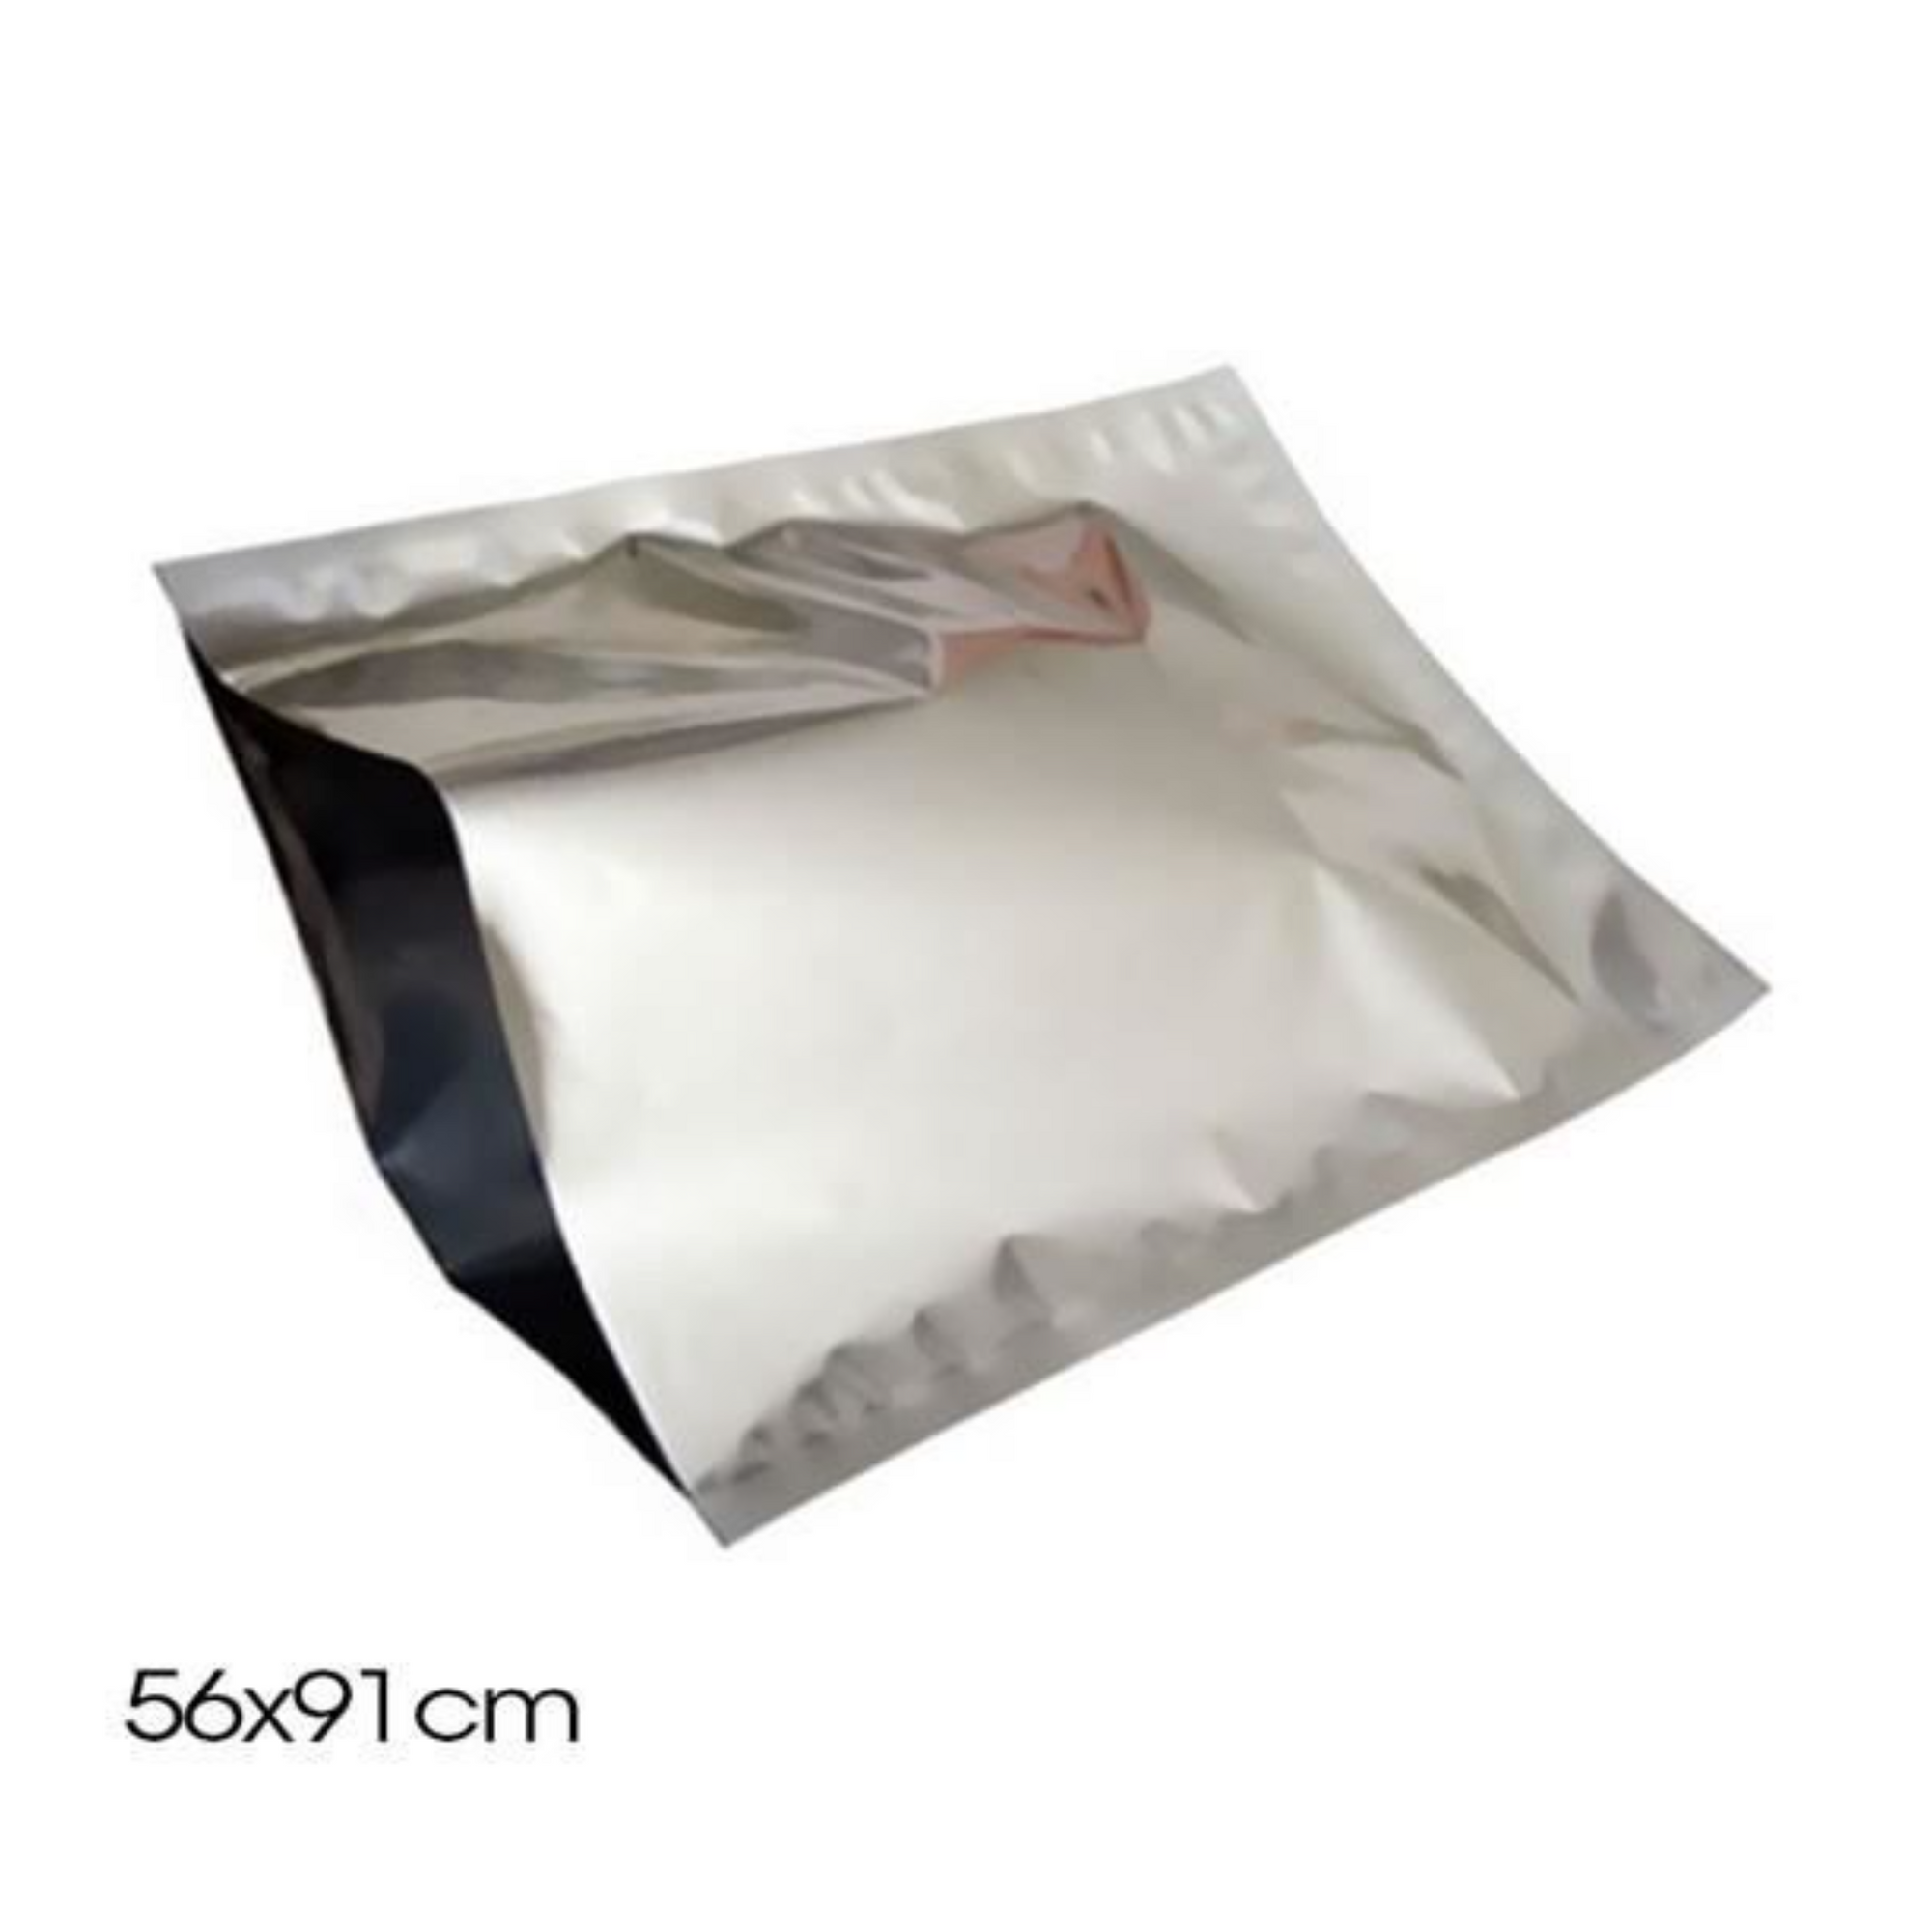 Aluminum pouch 56*91 cm Heat sealable